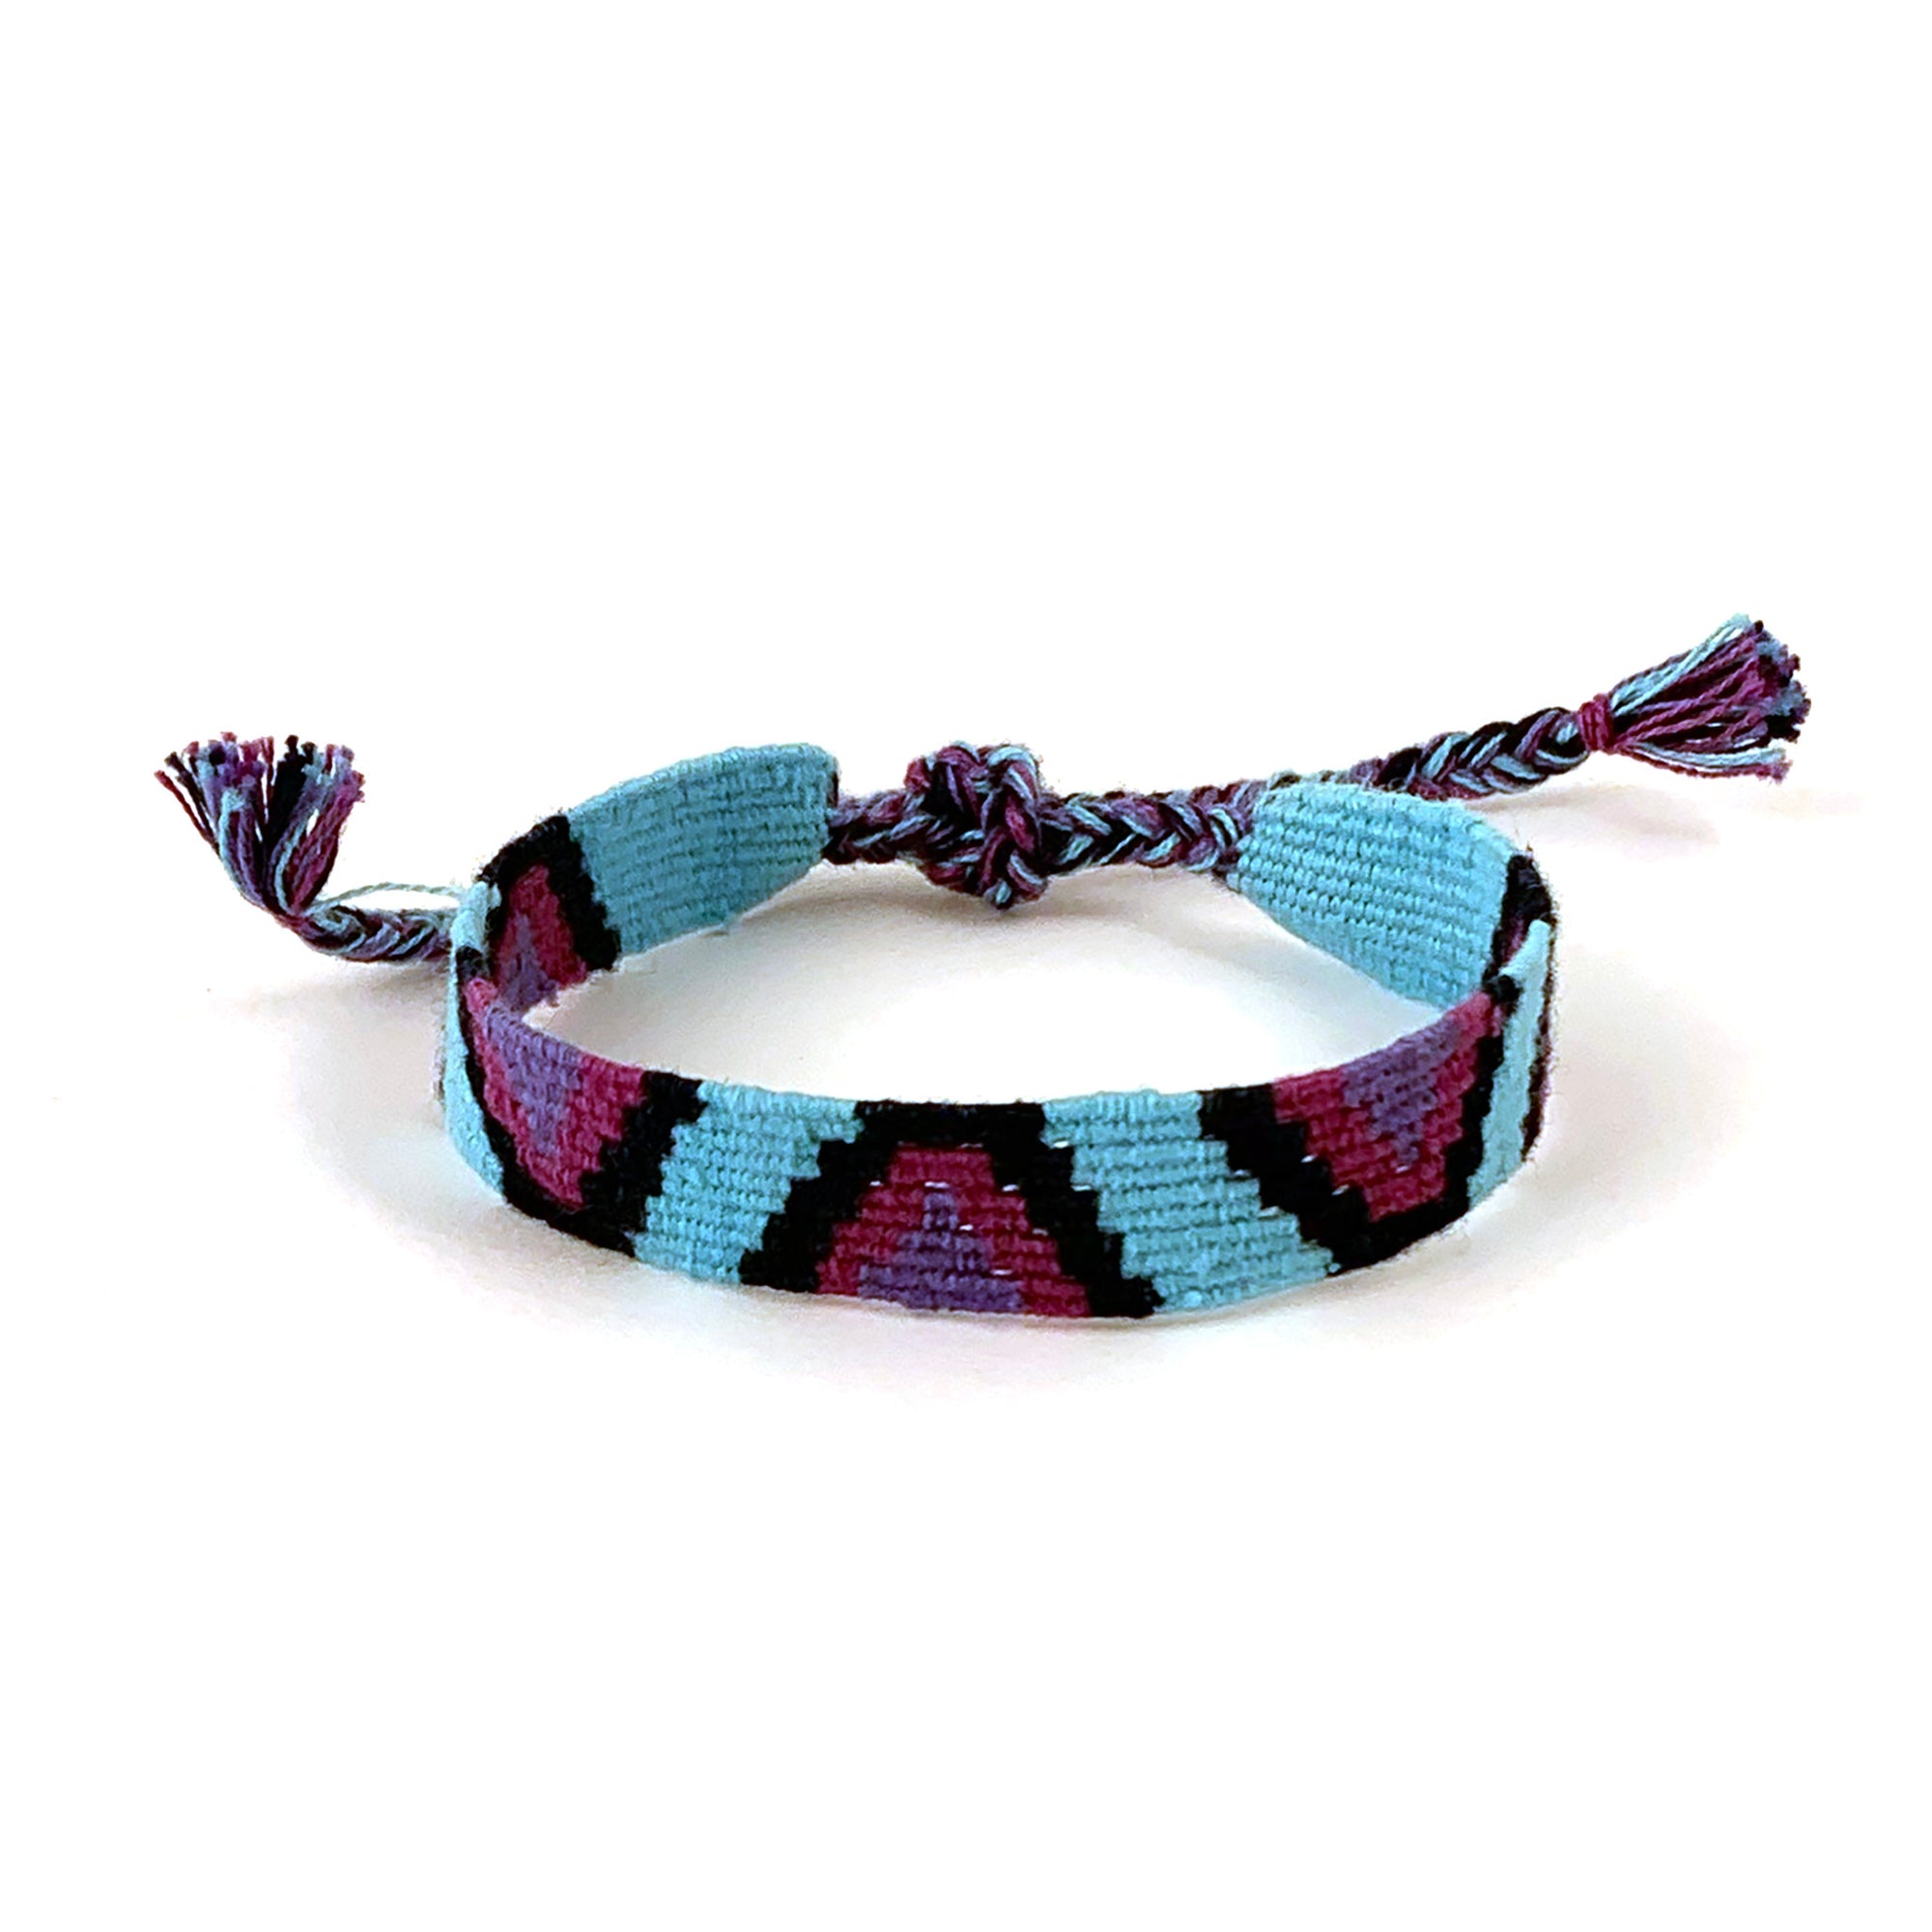 Crochet Bottle Bag in Rainbow Stripe  Handmade in Guatemala by Mayan Hands